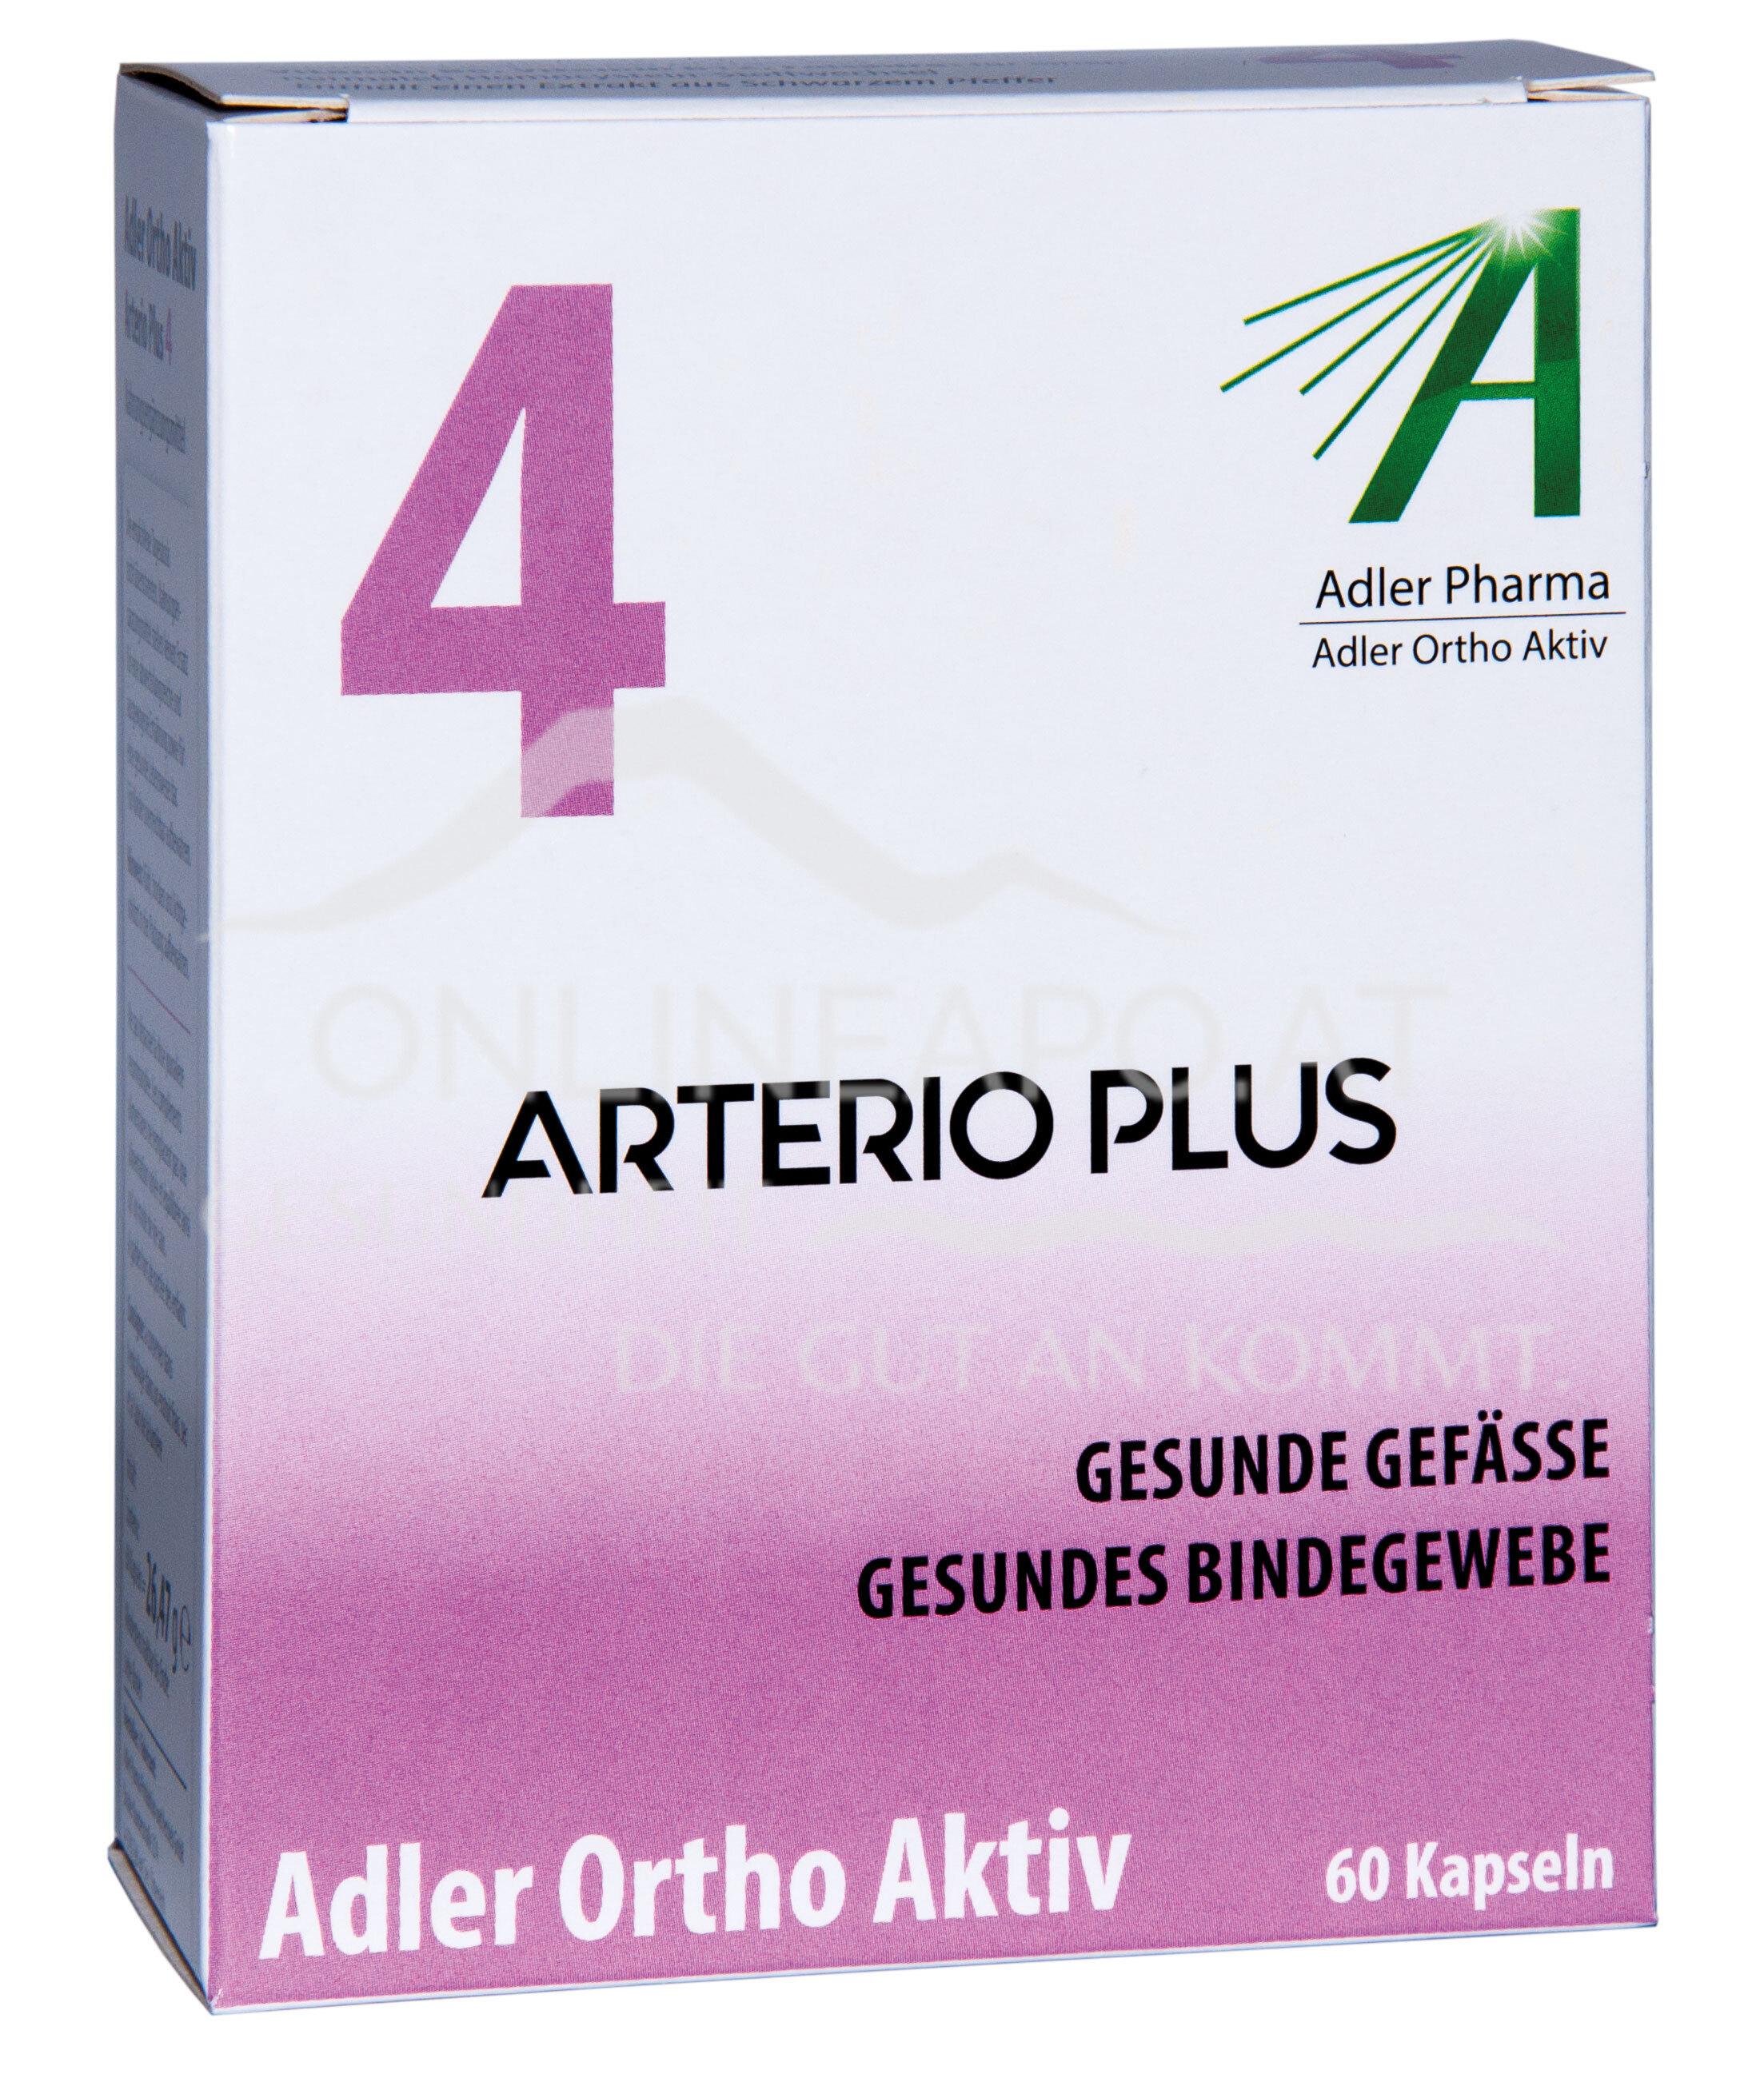 Adler Ortho Aktiv Nr. 4 Arterio Plus